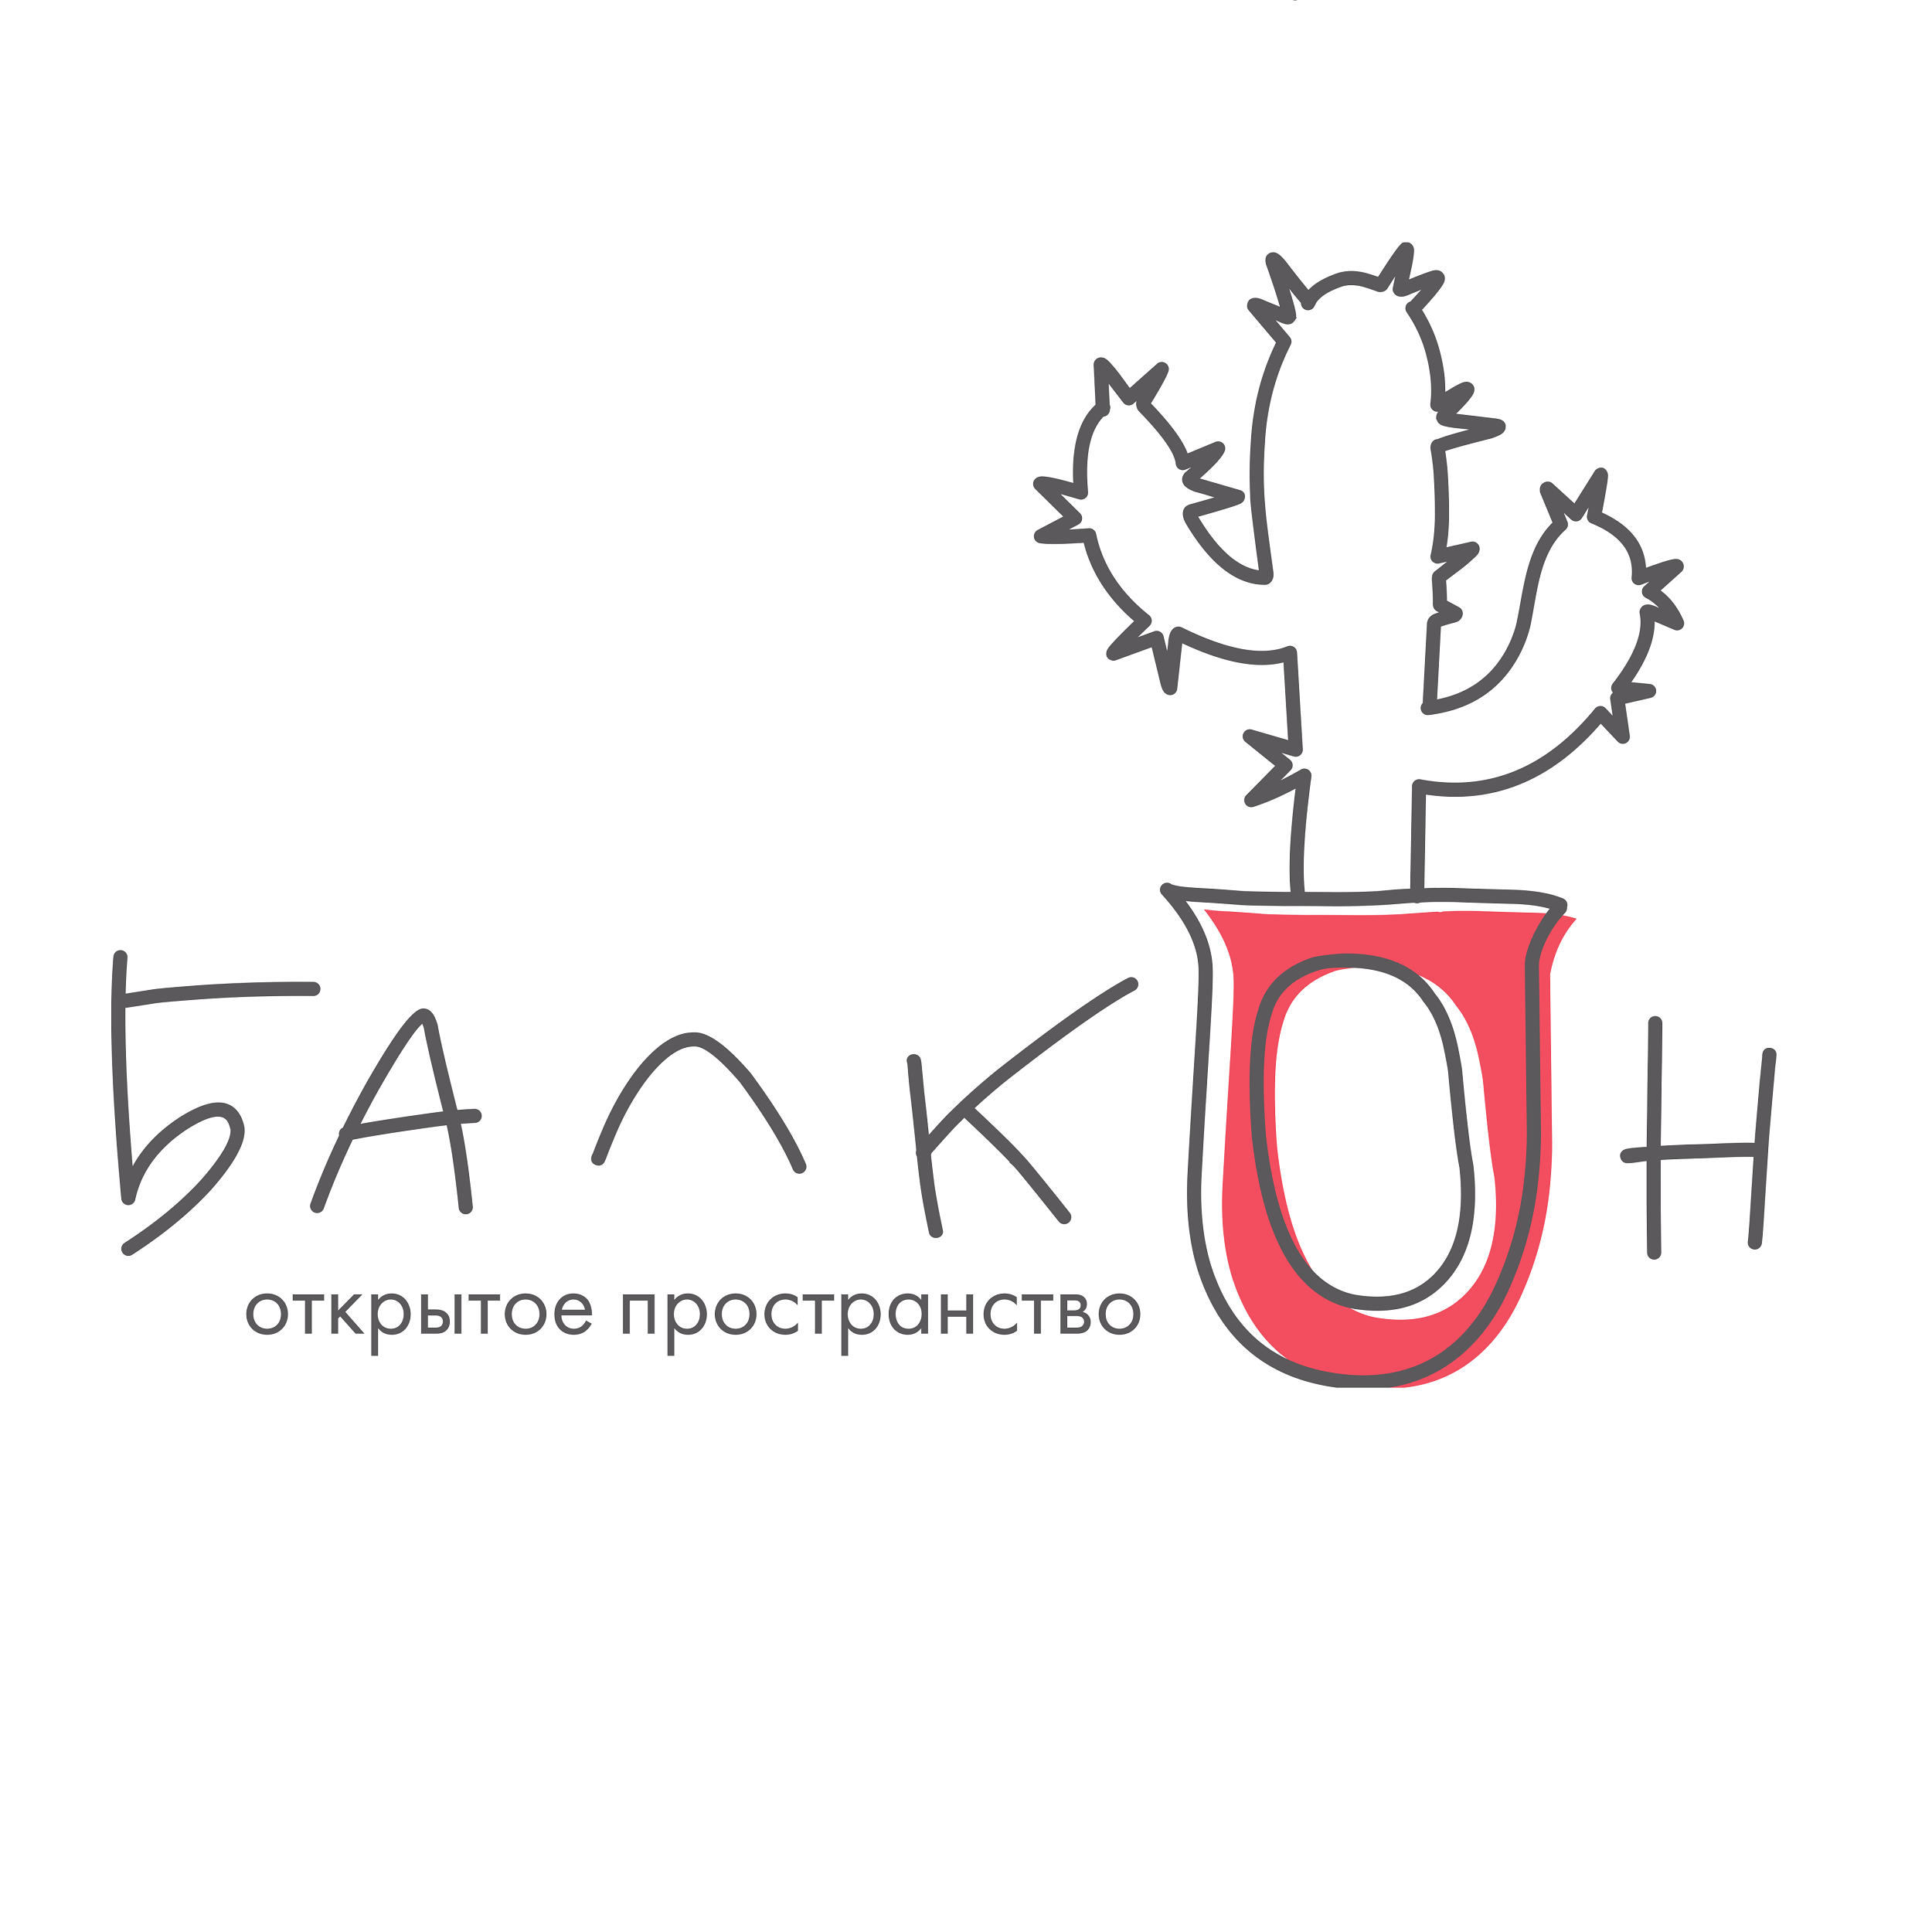 Логотип Открытое пространство "Балкон"